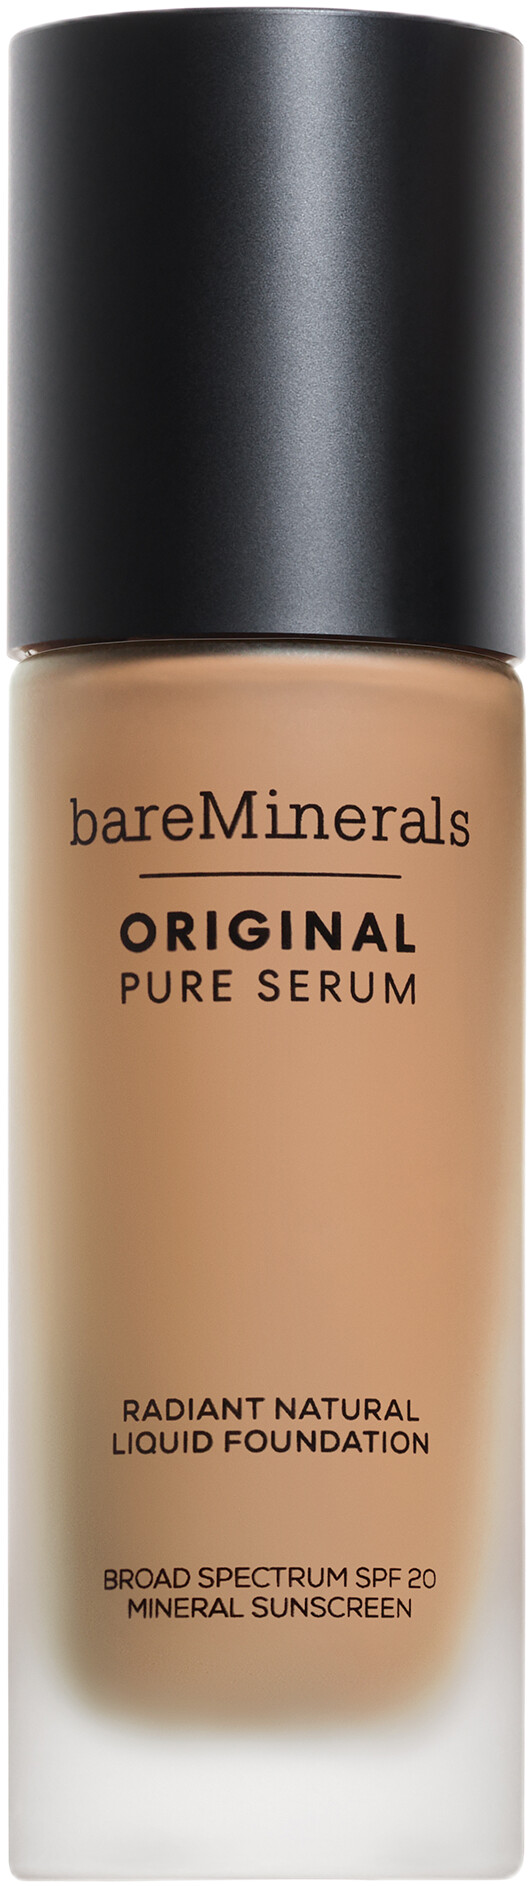 bareMinerals Original Pure Serum Radiant Natural Liquid Foundation SPF20 30ml 3.5 - Medium Neutral